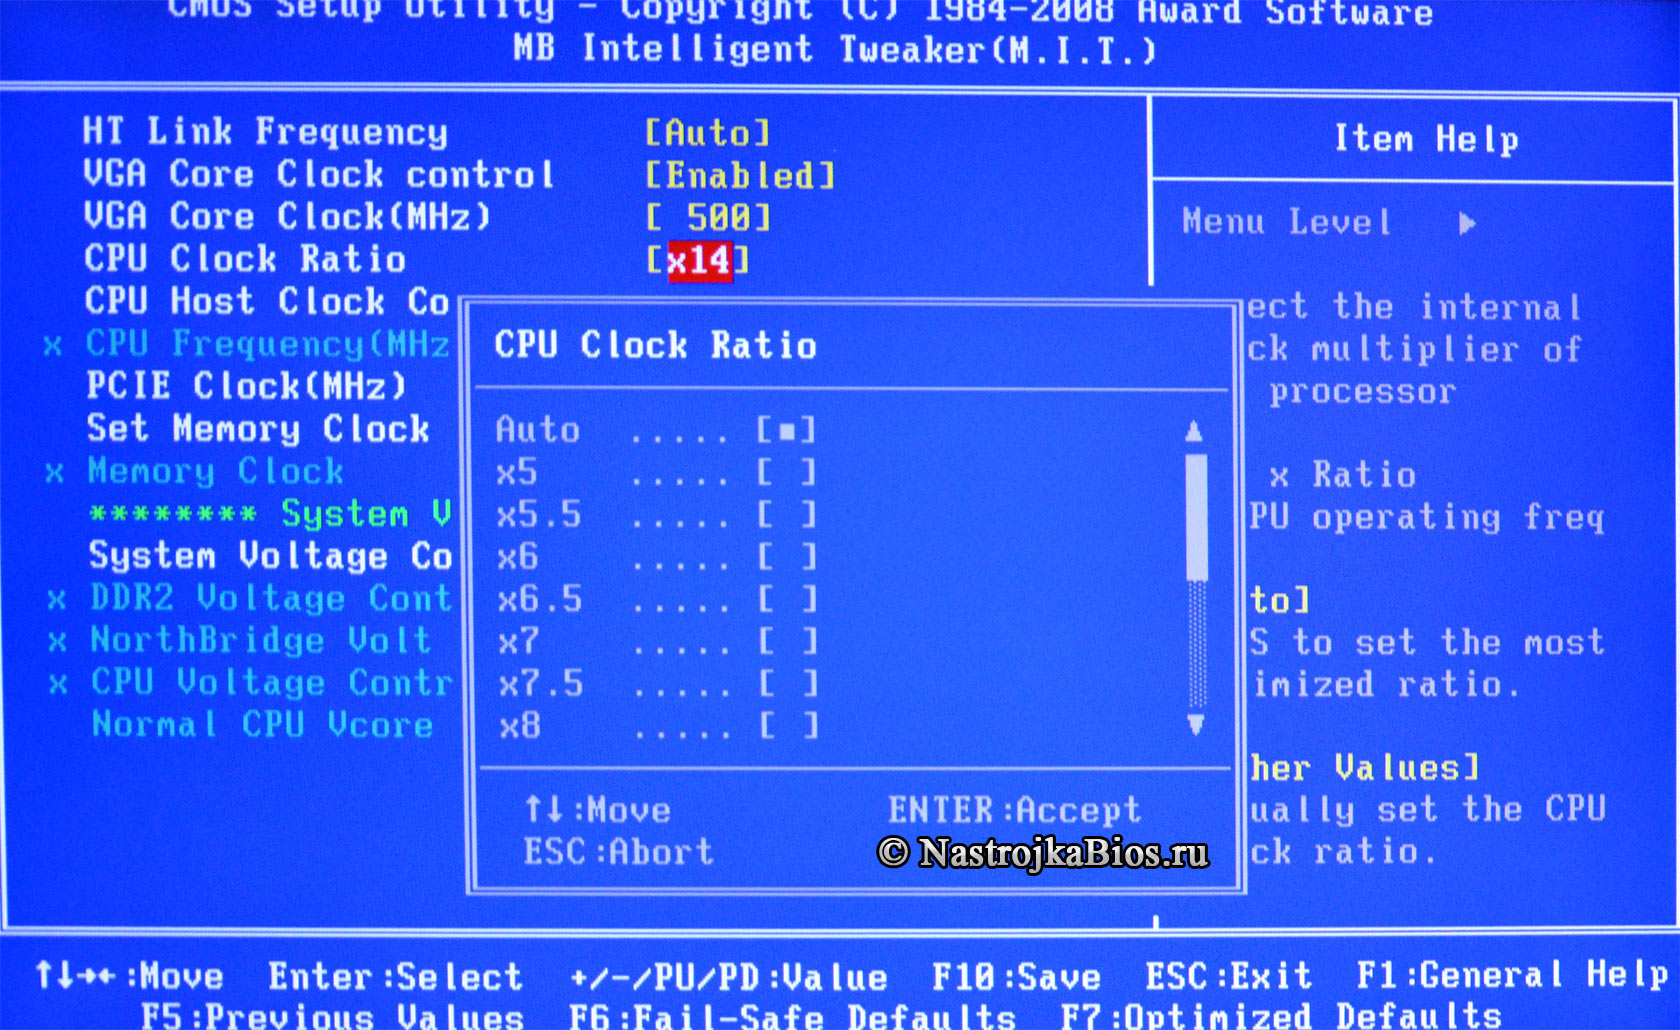 CPU Clock Ratio